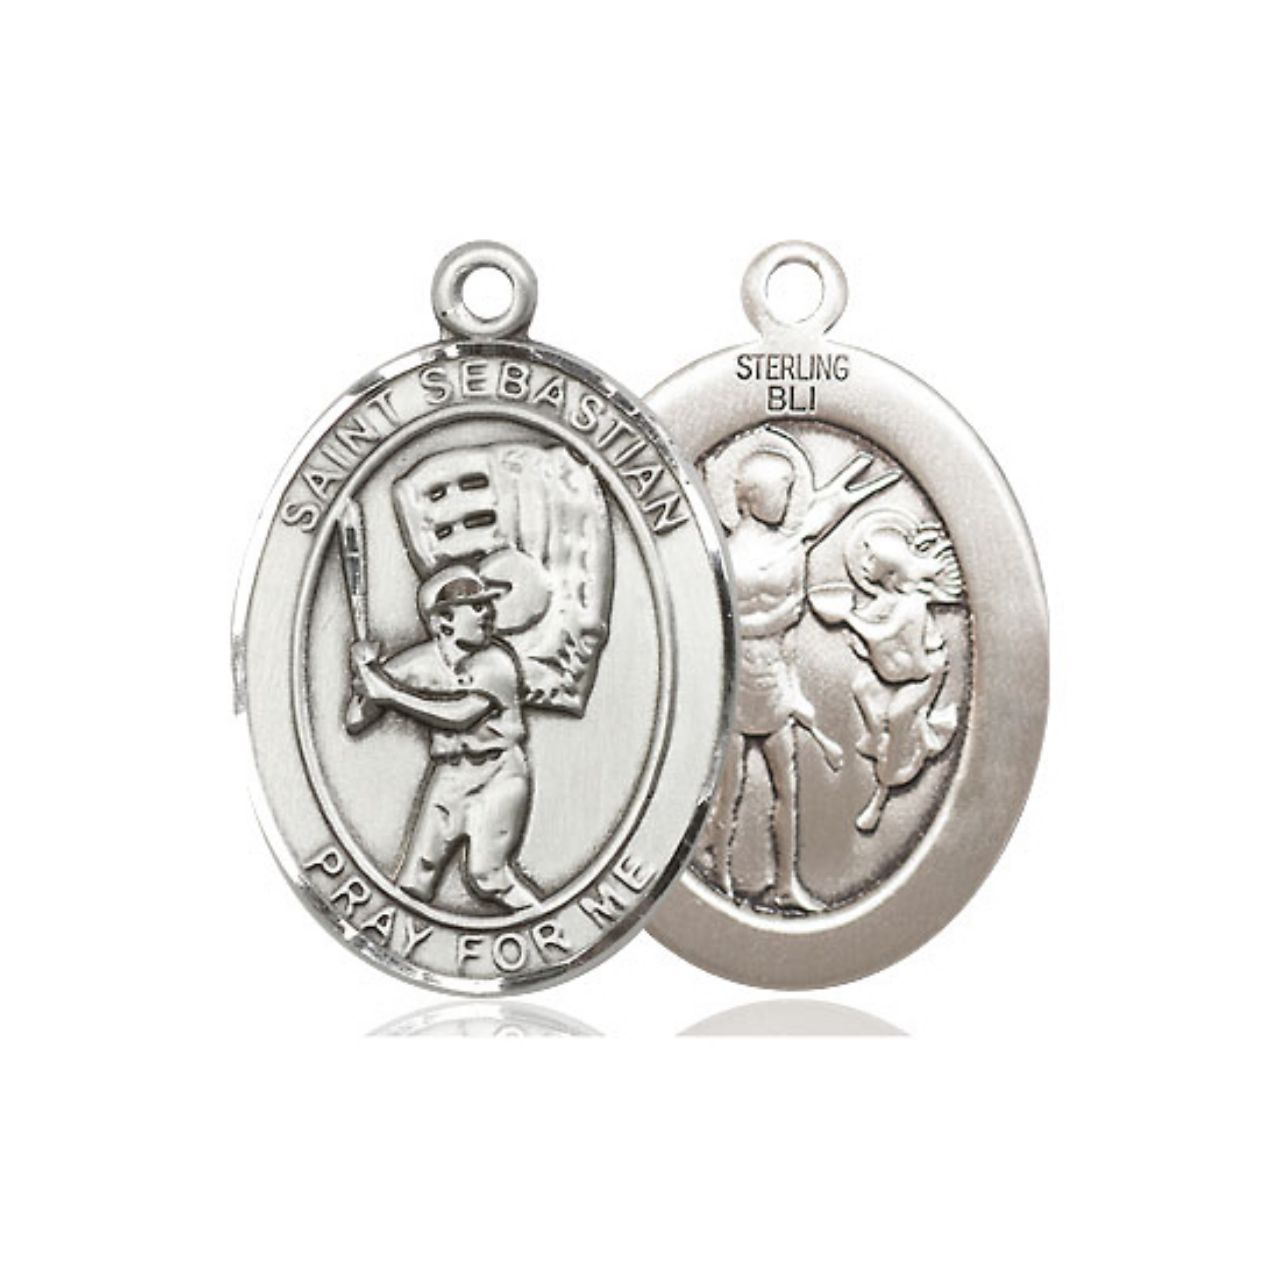 St. Sebastian Baseball Medal - Sterling Silver Oval Pendant (2 Sizes)